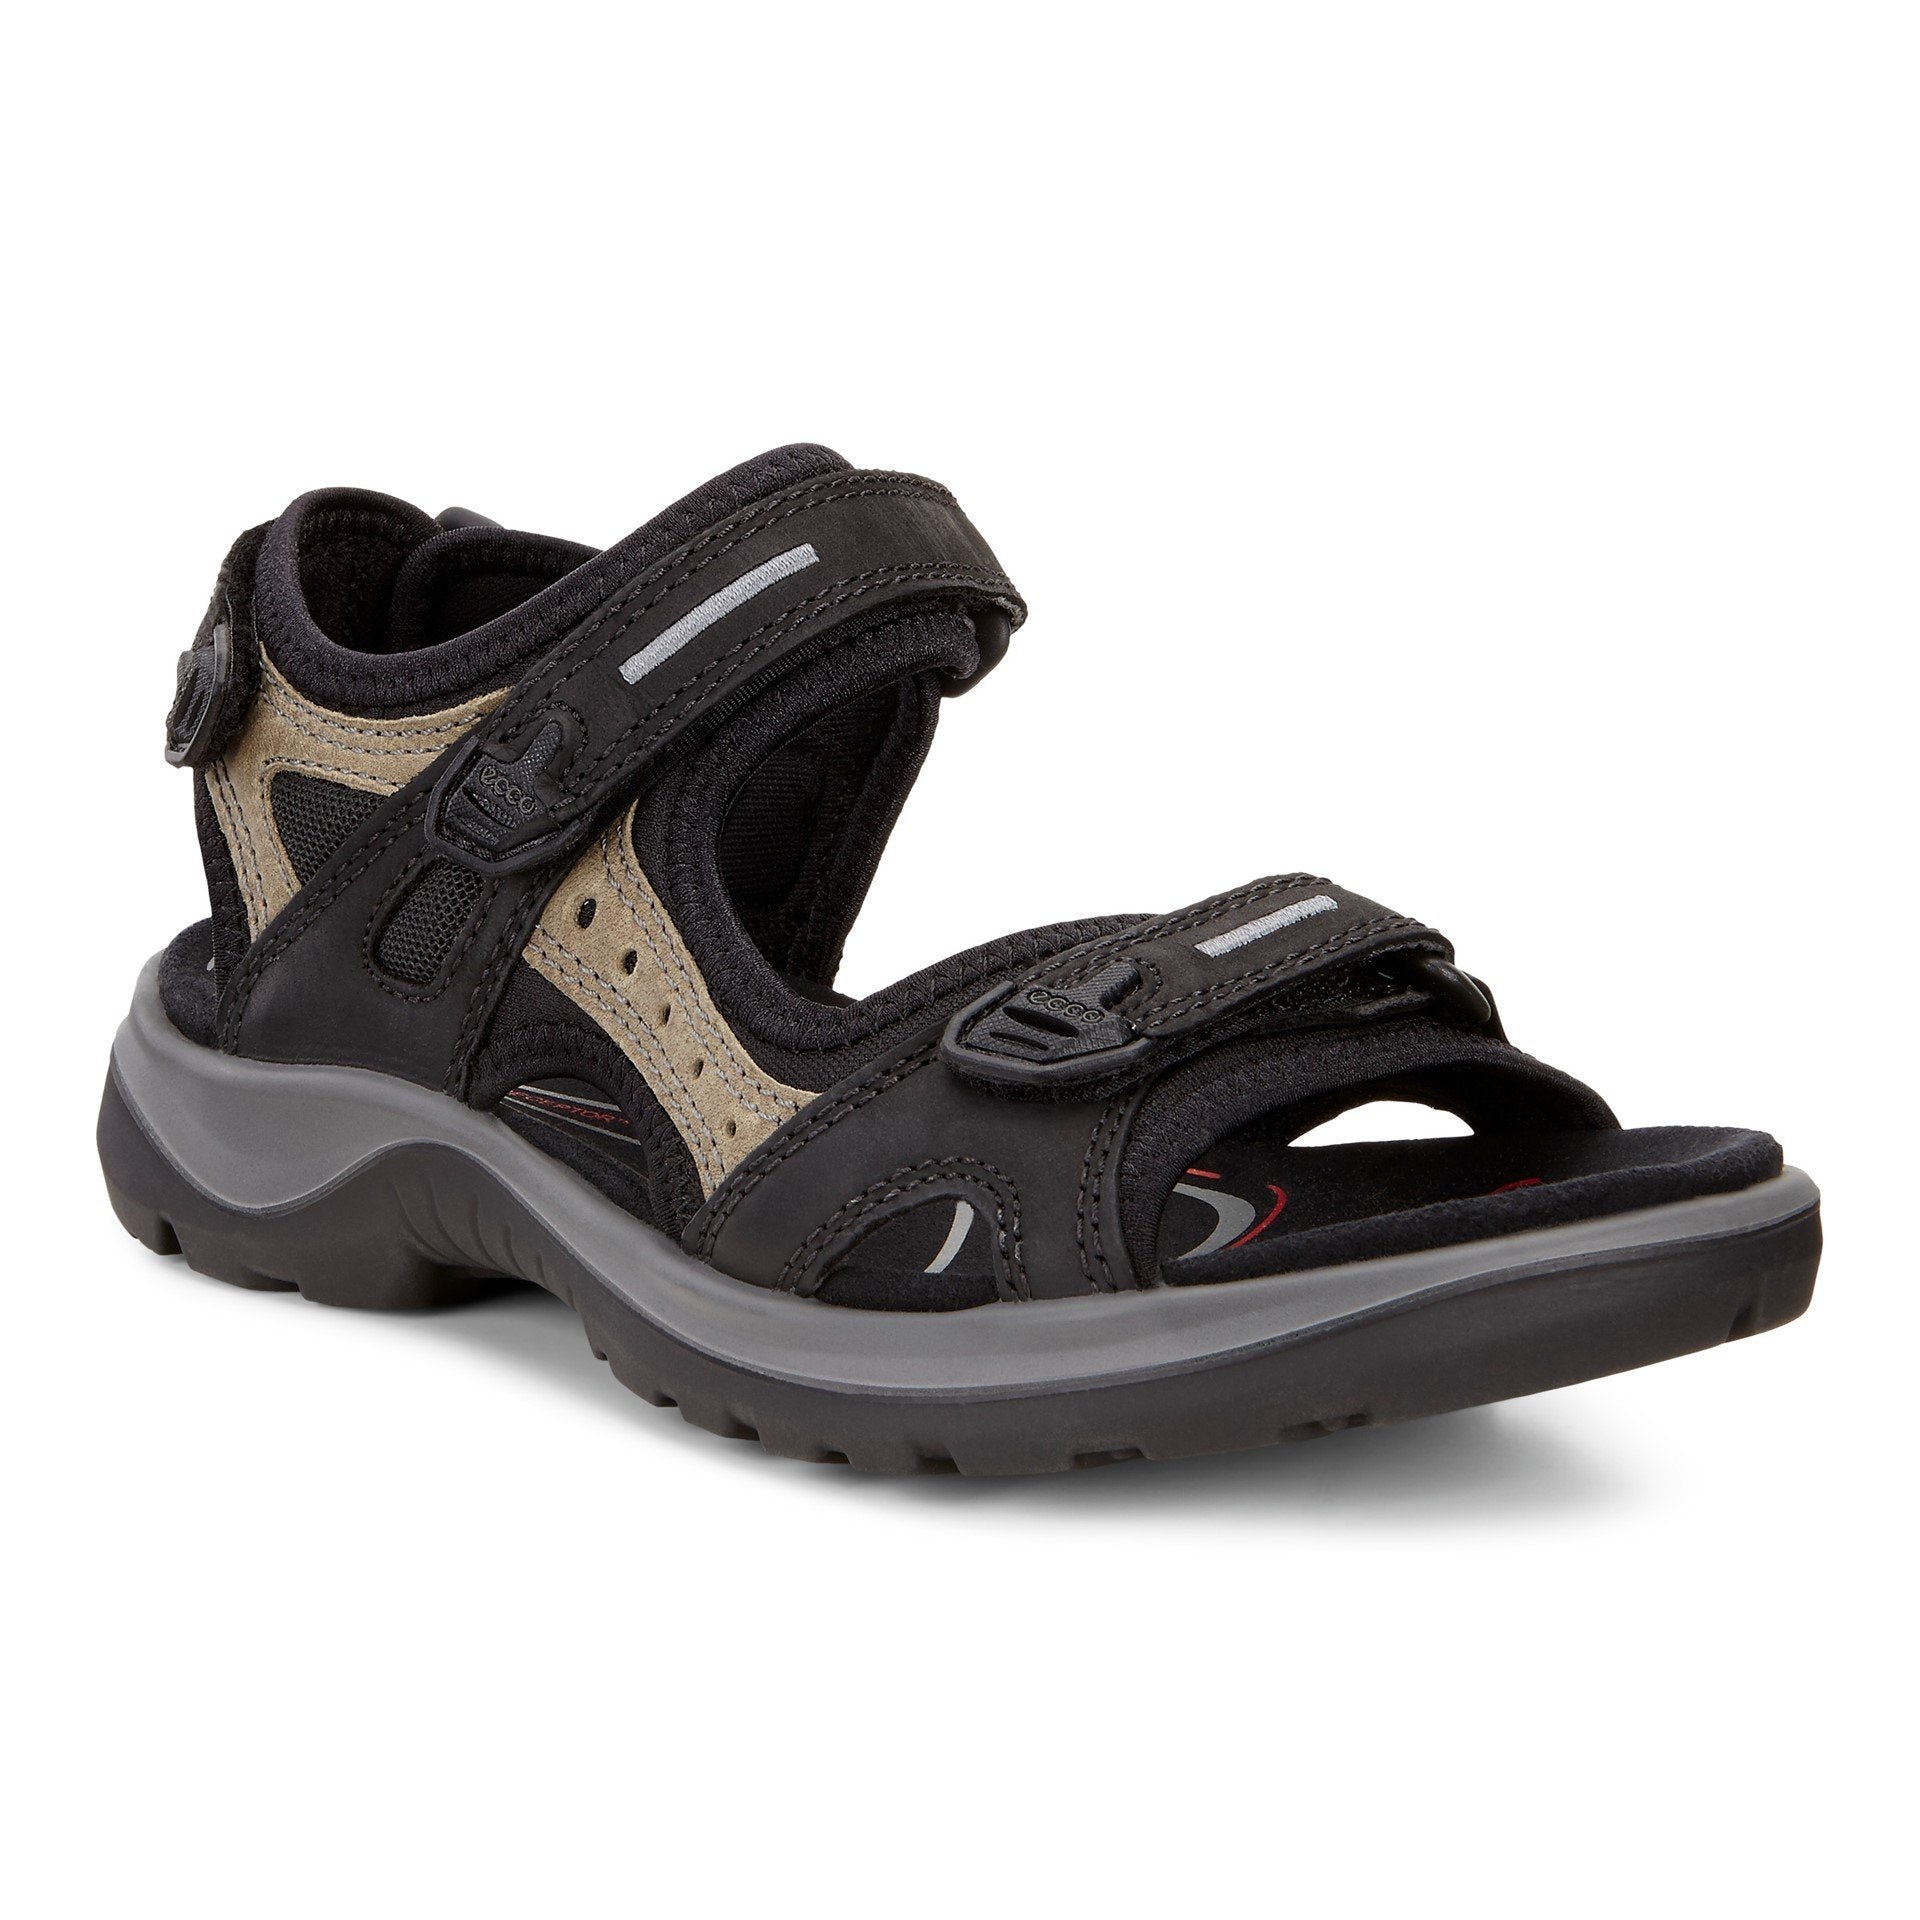 Ecco sandal model 069563 str 35-43